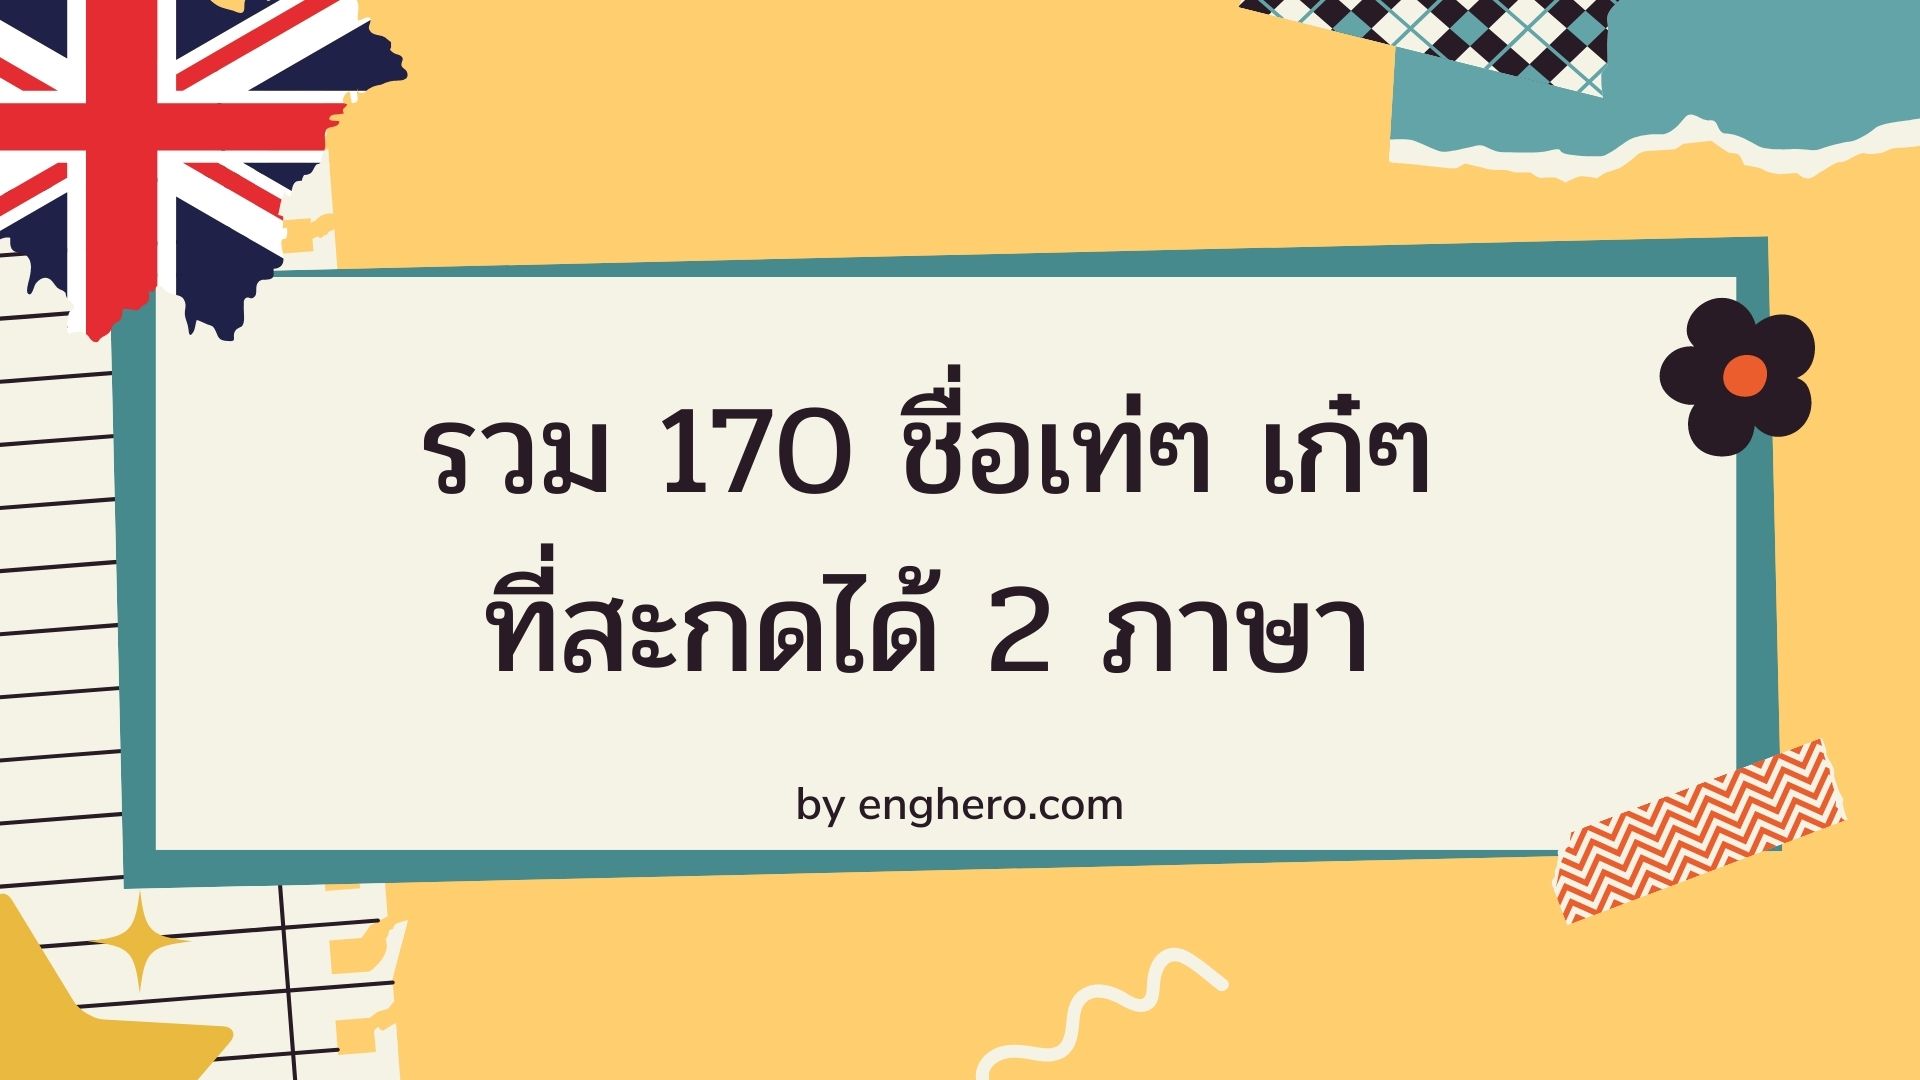 รวม 170 ชื่อเท่ๆ เก๋ๆ ที่สะกดได้ 2 ภาษา ทั้งภาษาไทยและภาษาอังกฤษ พร้อมความหมาย